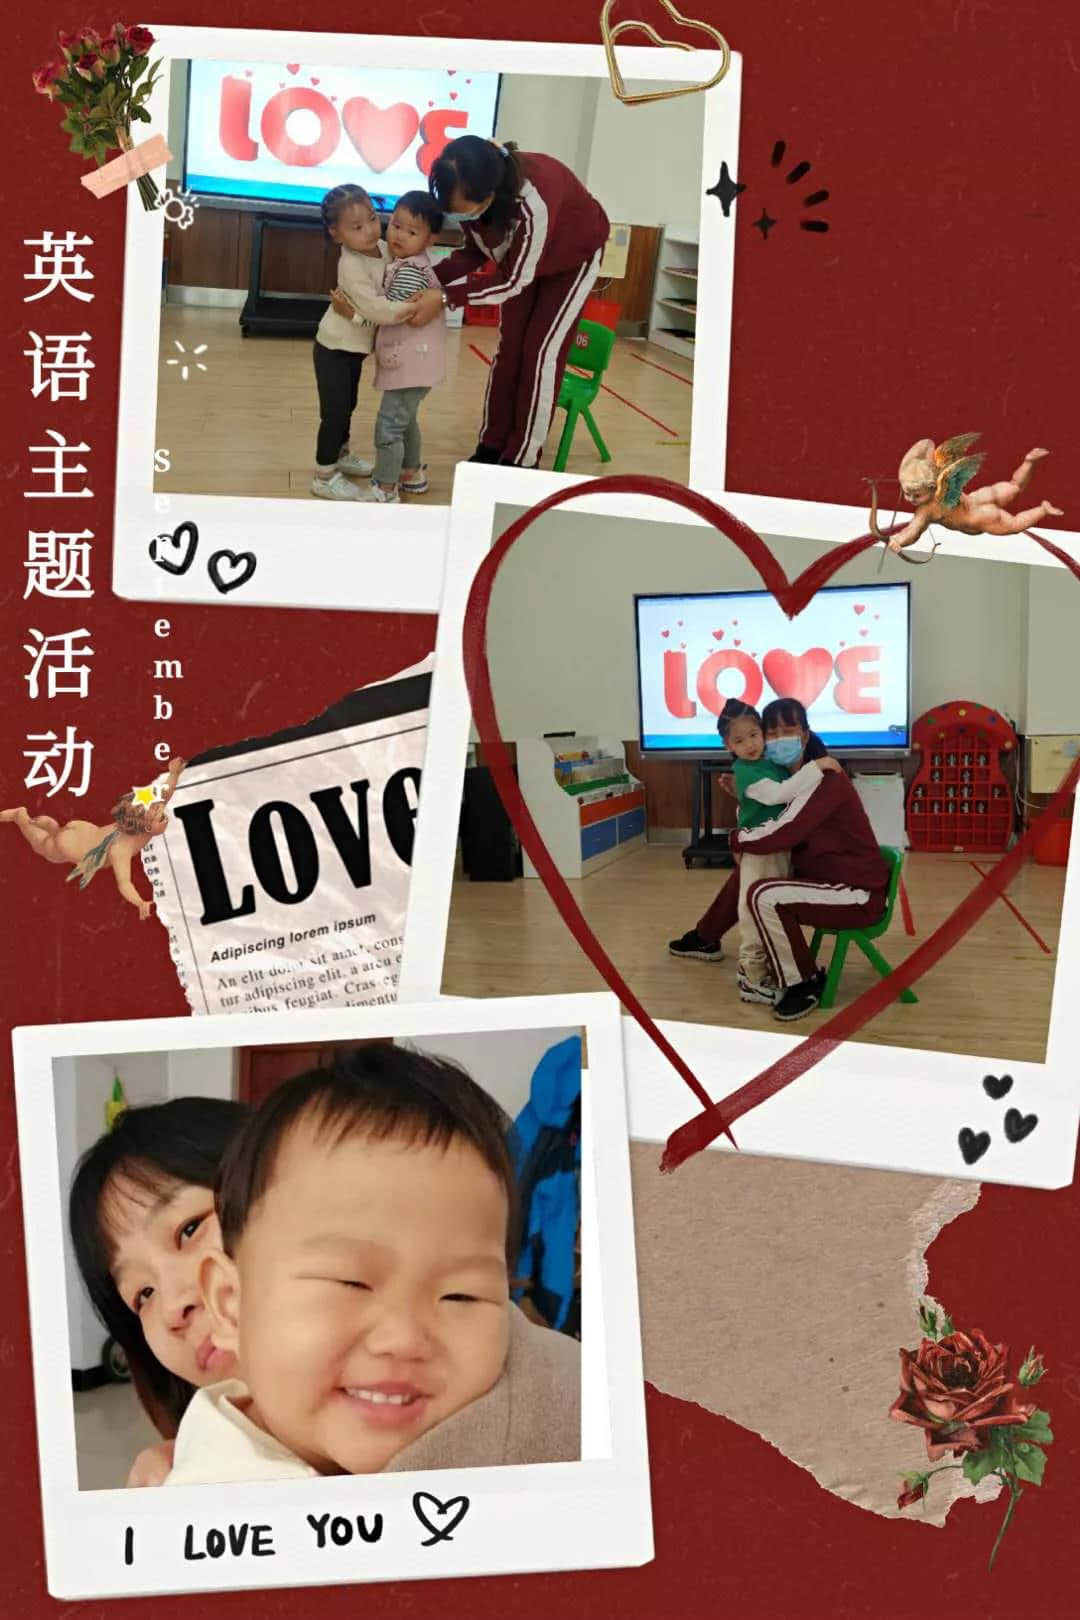 认真说爱你 ——“LOVE” ---私立一中幼儿园英语主题活动